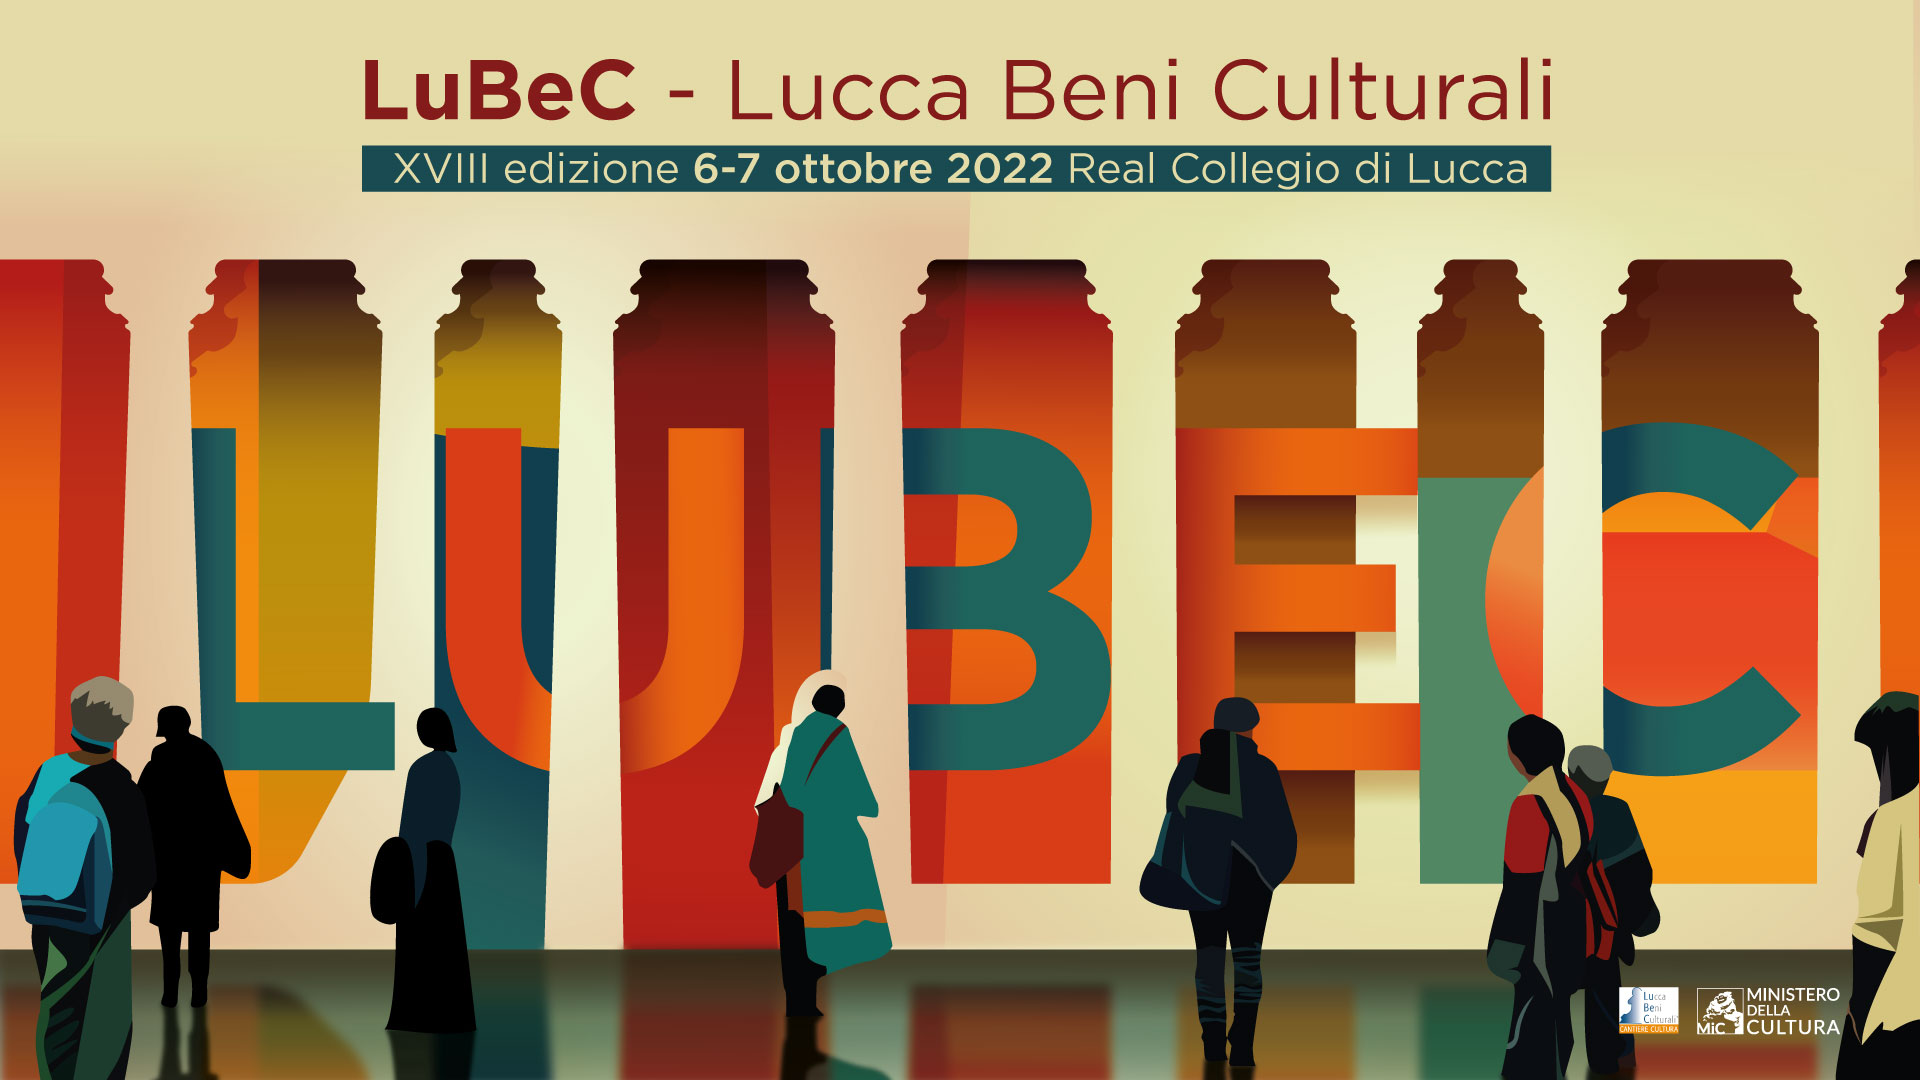 Il MiC a Lubec per presentare l’impatto reale che ha il digitale sui beni culturali: incontri, laboratori, stanze immersive